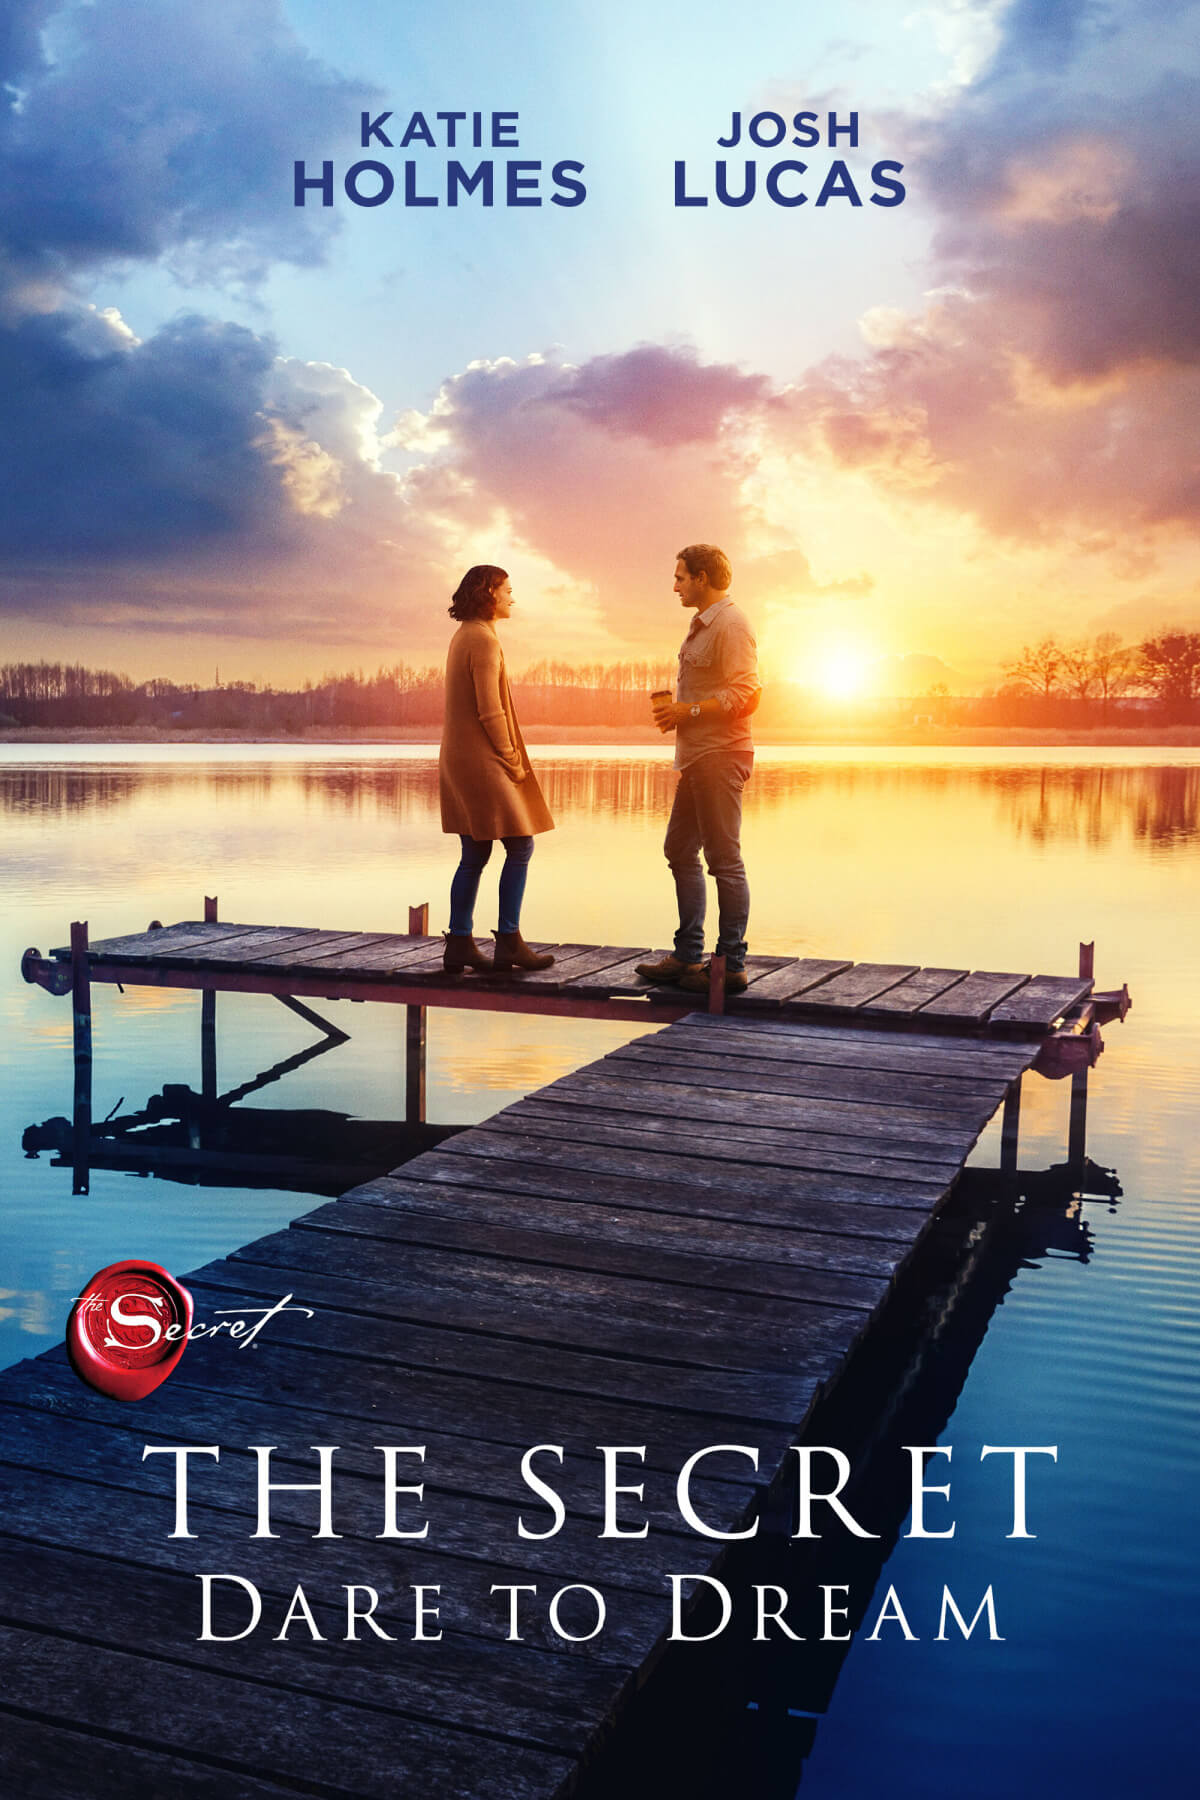 The Secret: Dare To Dream Movie